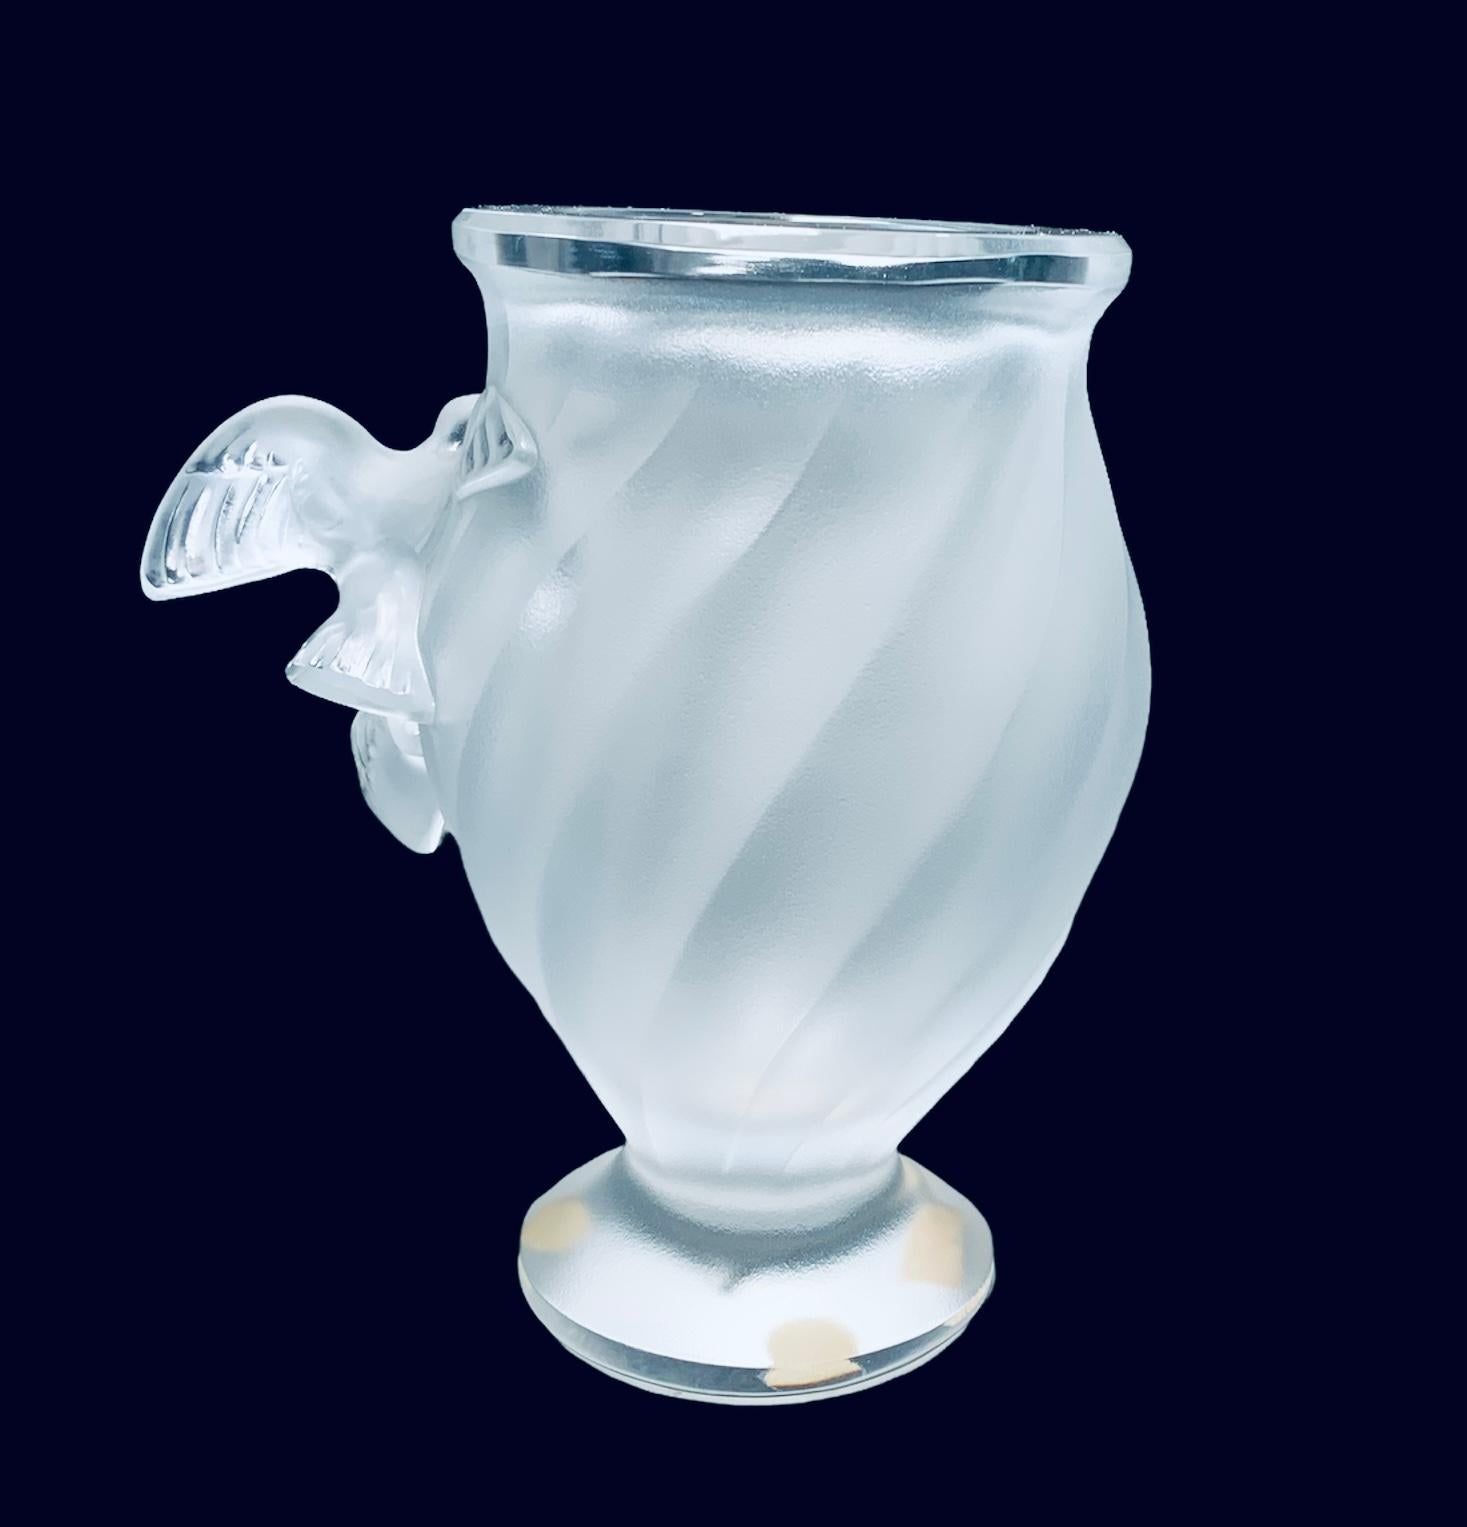 Il s'agit d'un vase Lalique en cristal clair et dépoli. Il représente deux oiseaux Rosine en vol au centre du vase. De délicats tourbillons striés ornent le cristal. L'autocollant Lalique, Paris se trouve sous la base.